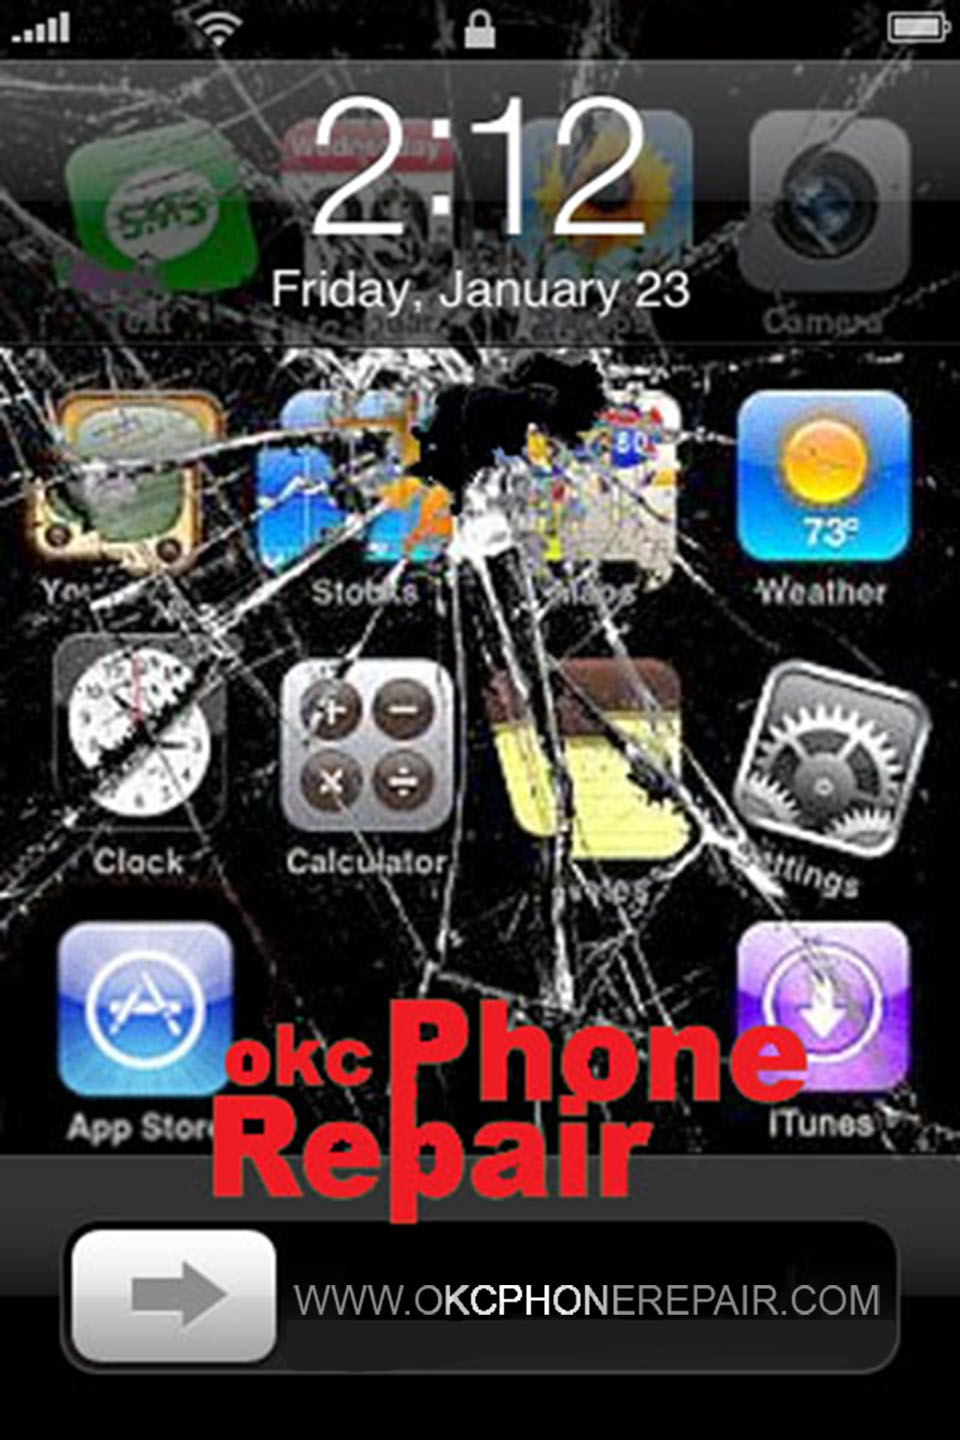 OKC Phone Repair